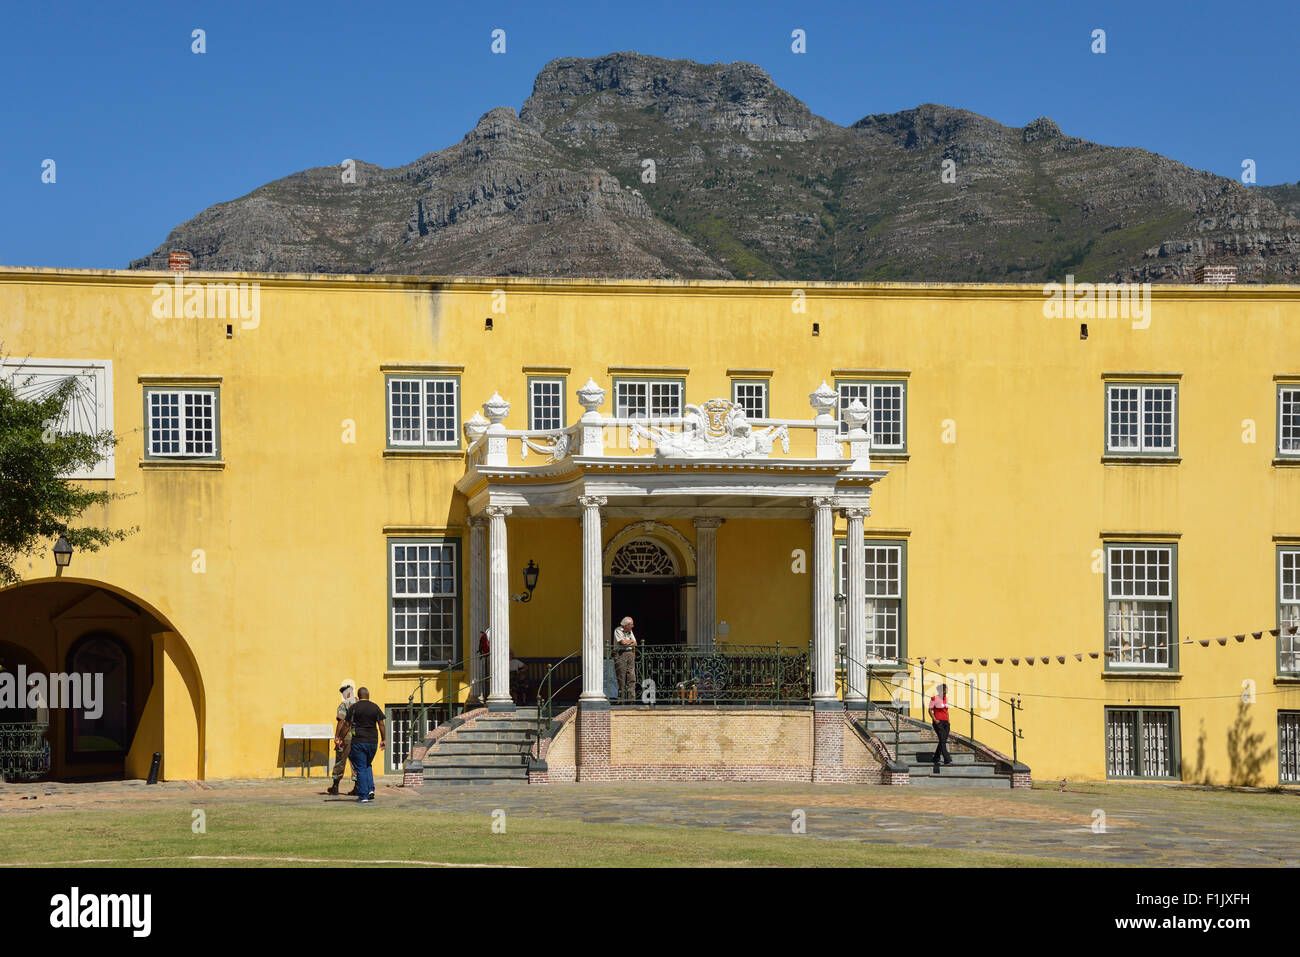 Blocco F, il Castello di Buona Speranza (Kasteel die Goeie Hoop), Buitenkant Street, Città del Capo, Provincia del Capo Occidentale, Sud Africa Foto Stock